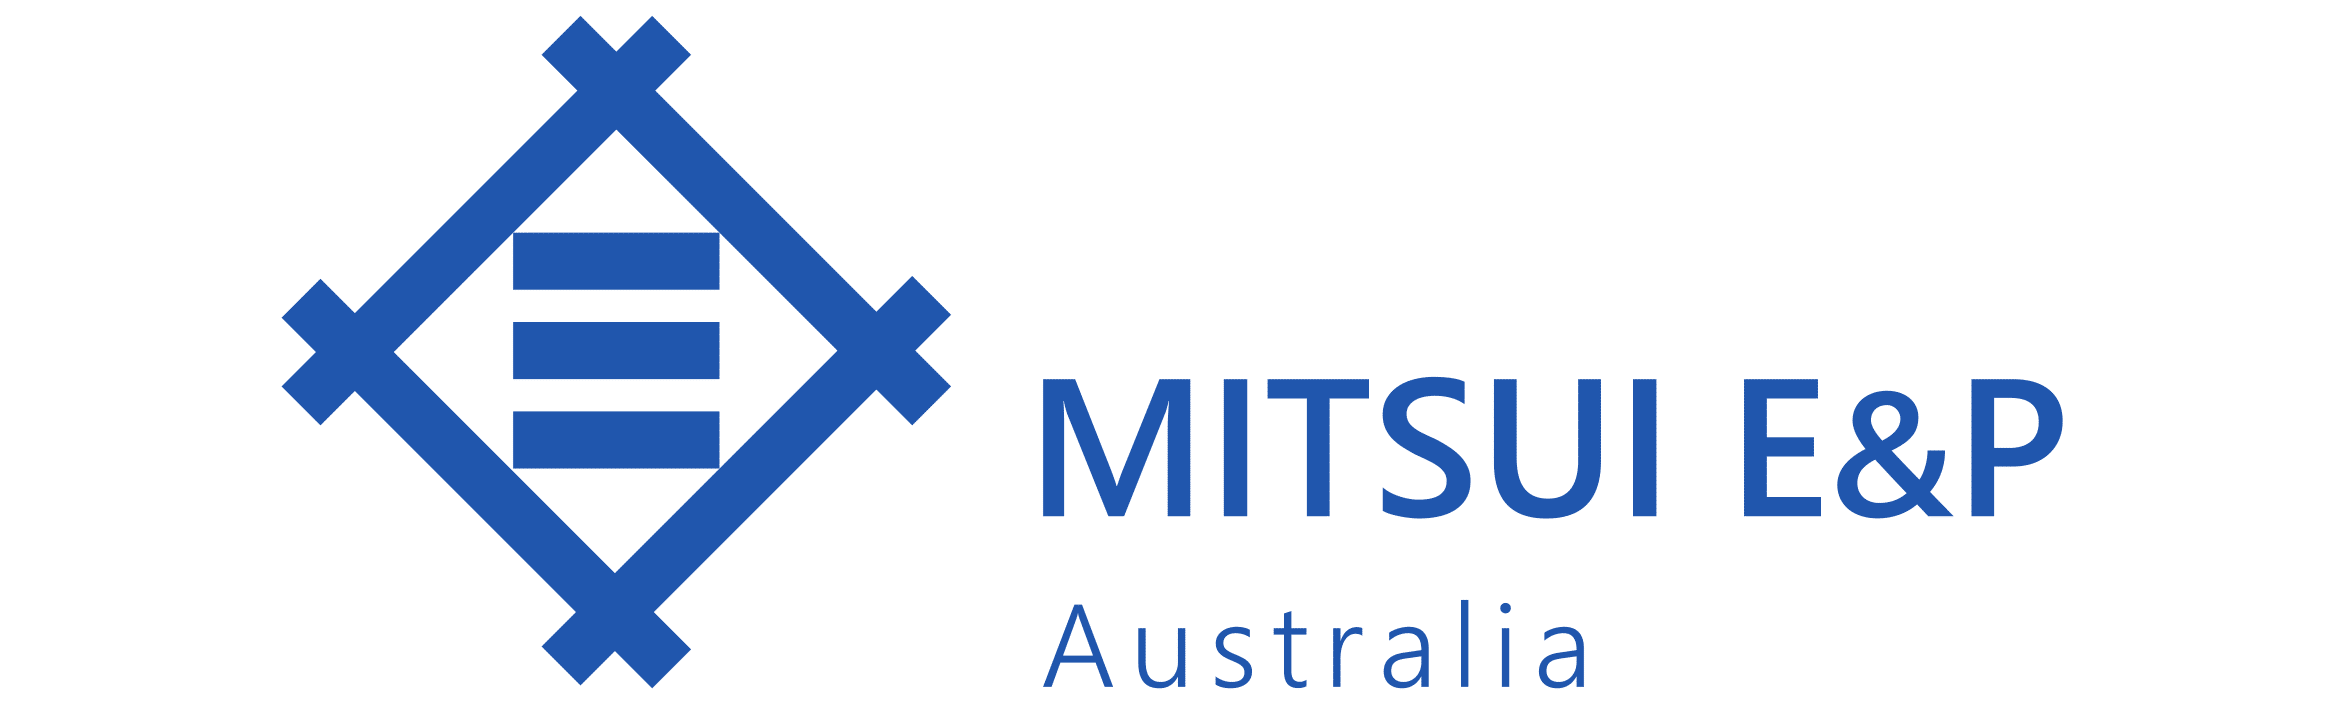 Mitsui Logo - Home - Mitsui E&P Australia in the Mid West